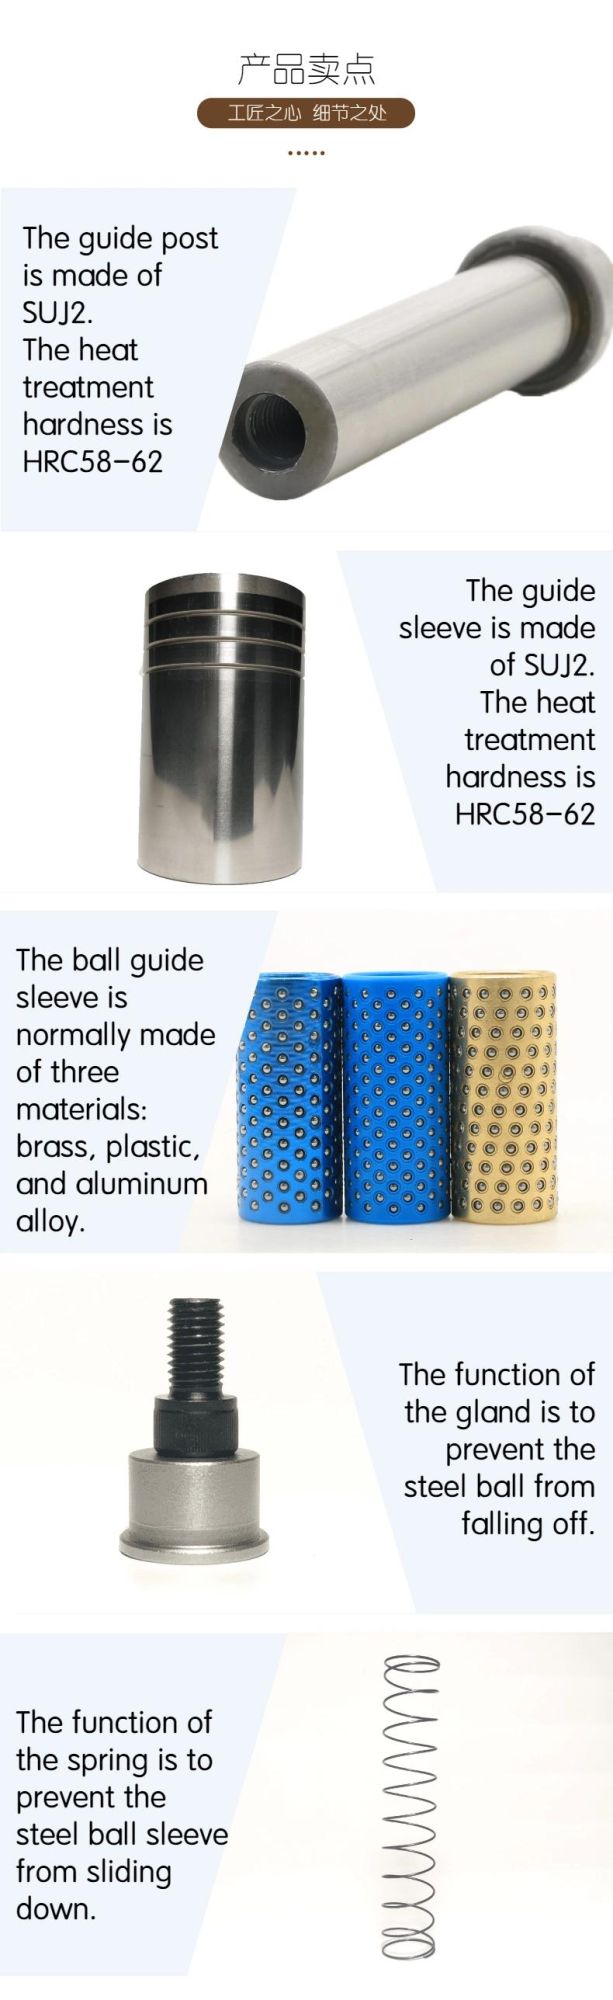 China Wholesale Sgoh Guides Bushing Ball Cage Pin Bush Post Mold Fitting Parts Pillar Set Guide